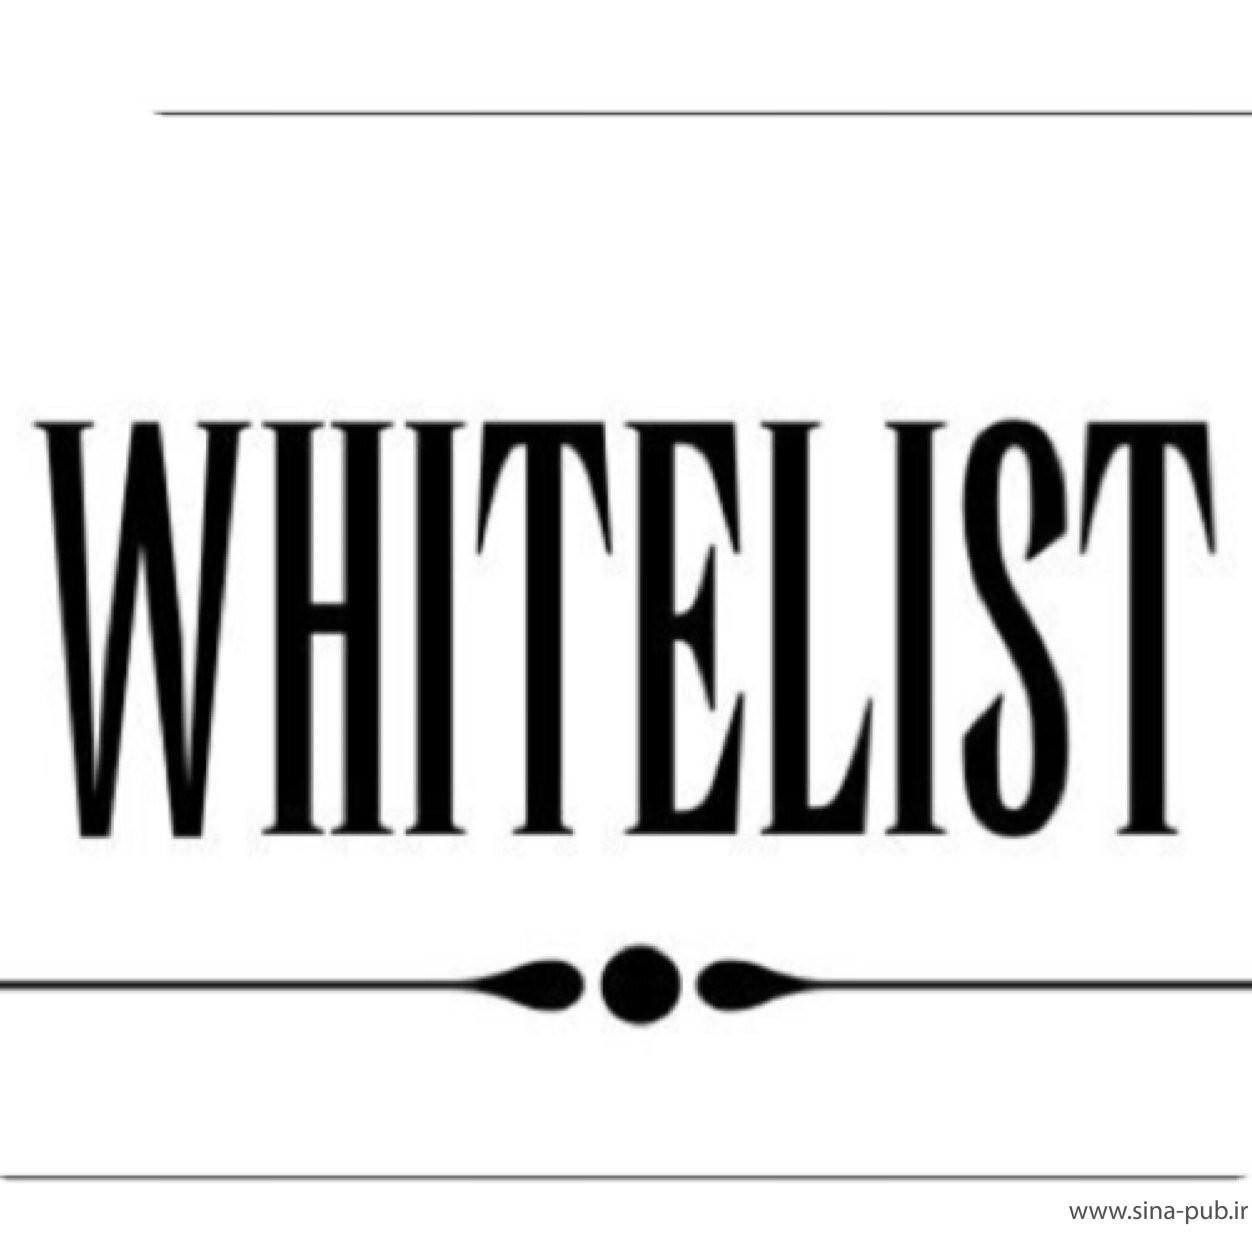 جدید ترین لیست سفید دانشگاه ازاد - شهریور 98